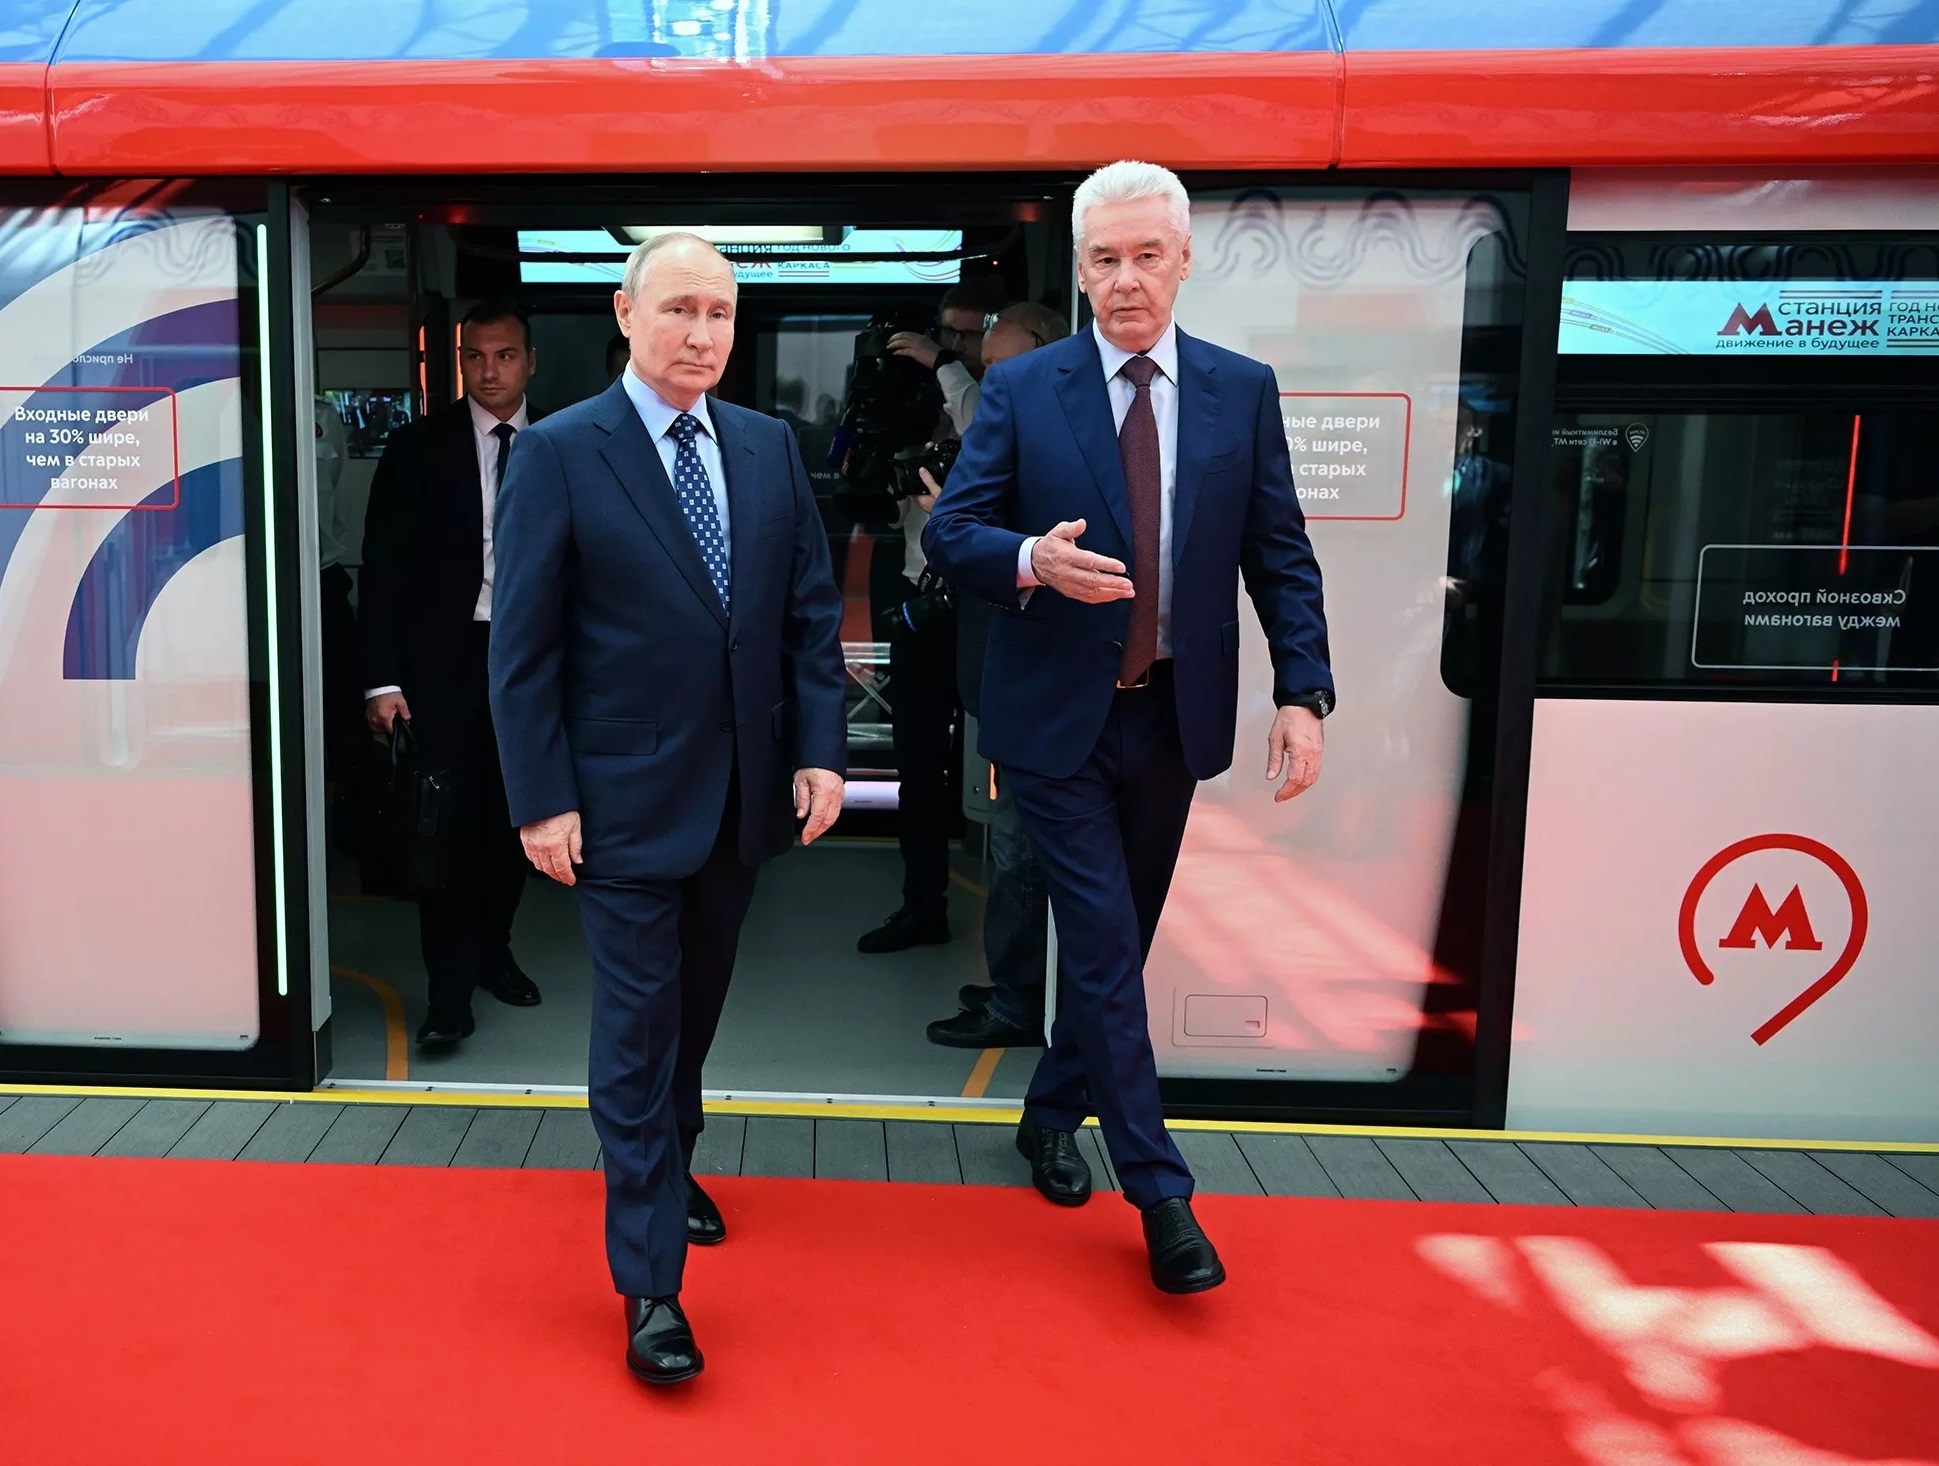 Президент дал команду на запуск движения по третьей линии Московских центральных диаметров